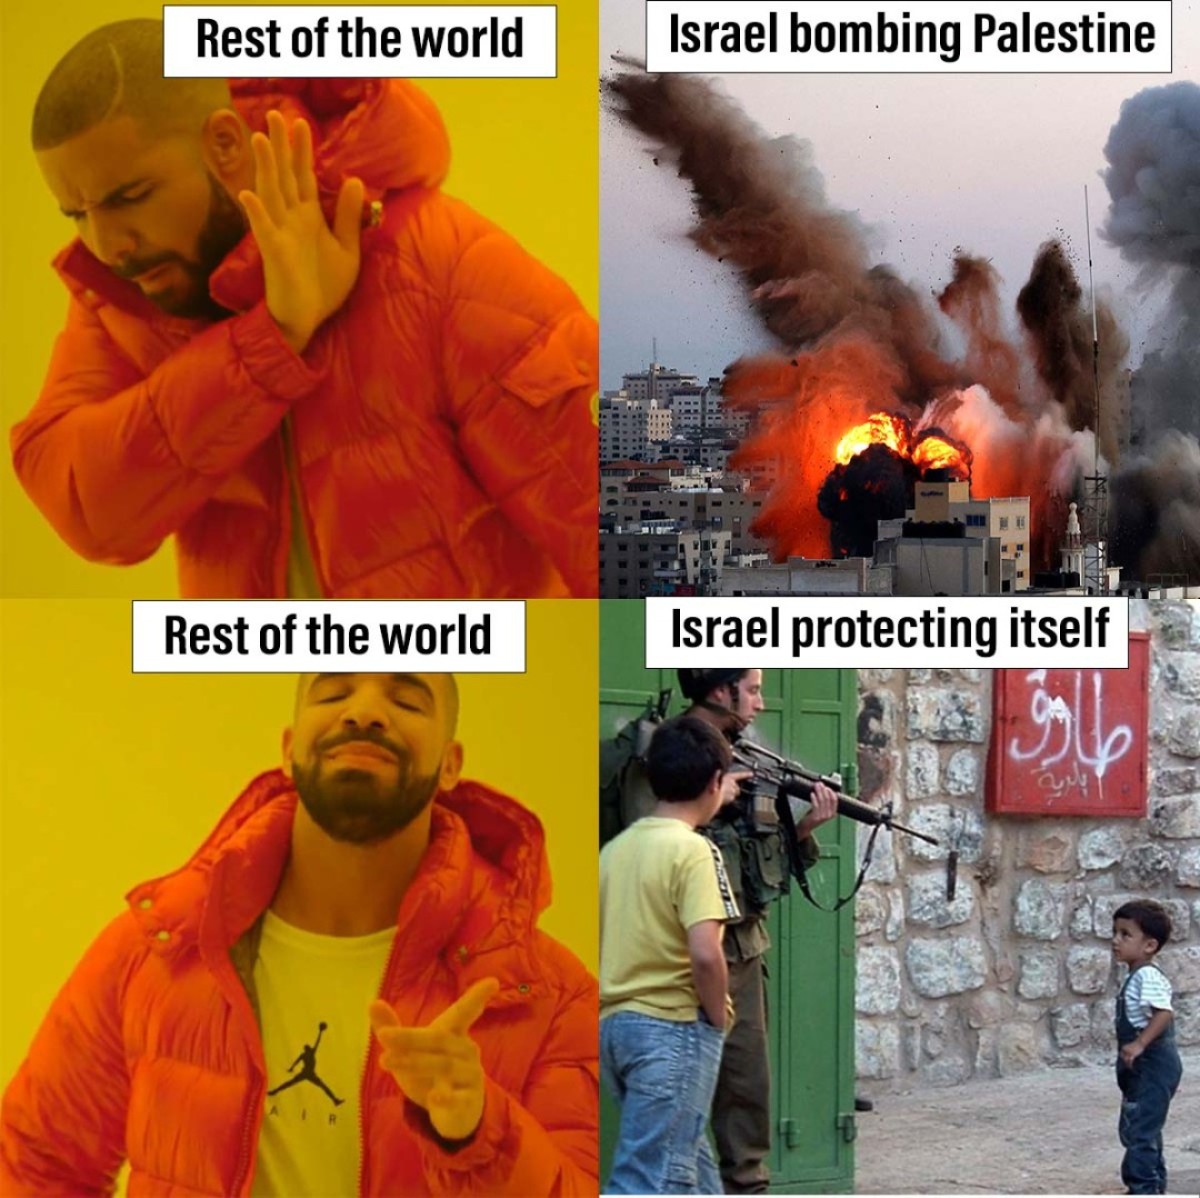 Israel protecting itself